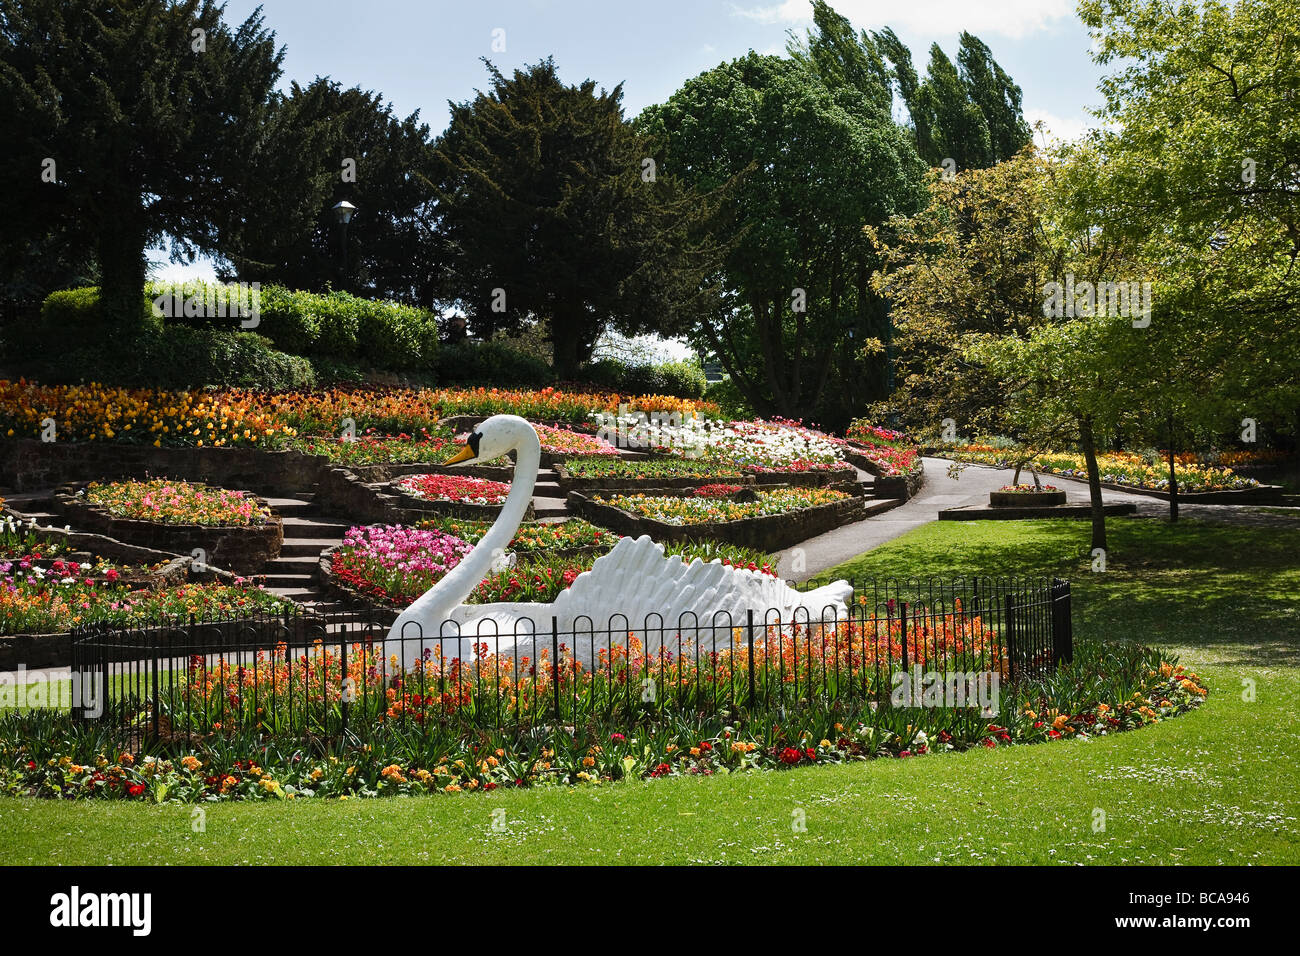 Affichage floral et le fameux swan dans Stapenhill Gardens, Burton upon Trent, Staffordshire Banque D'Images